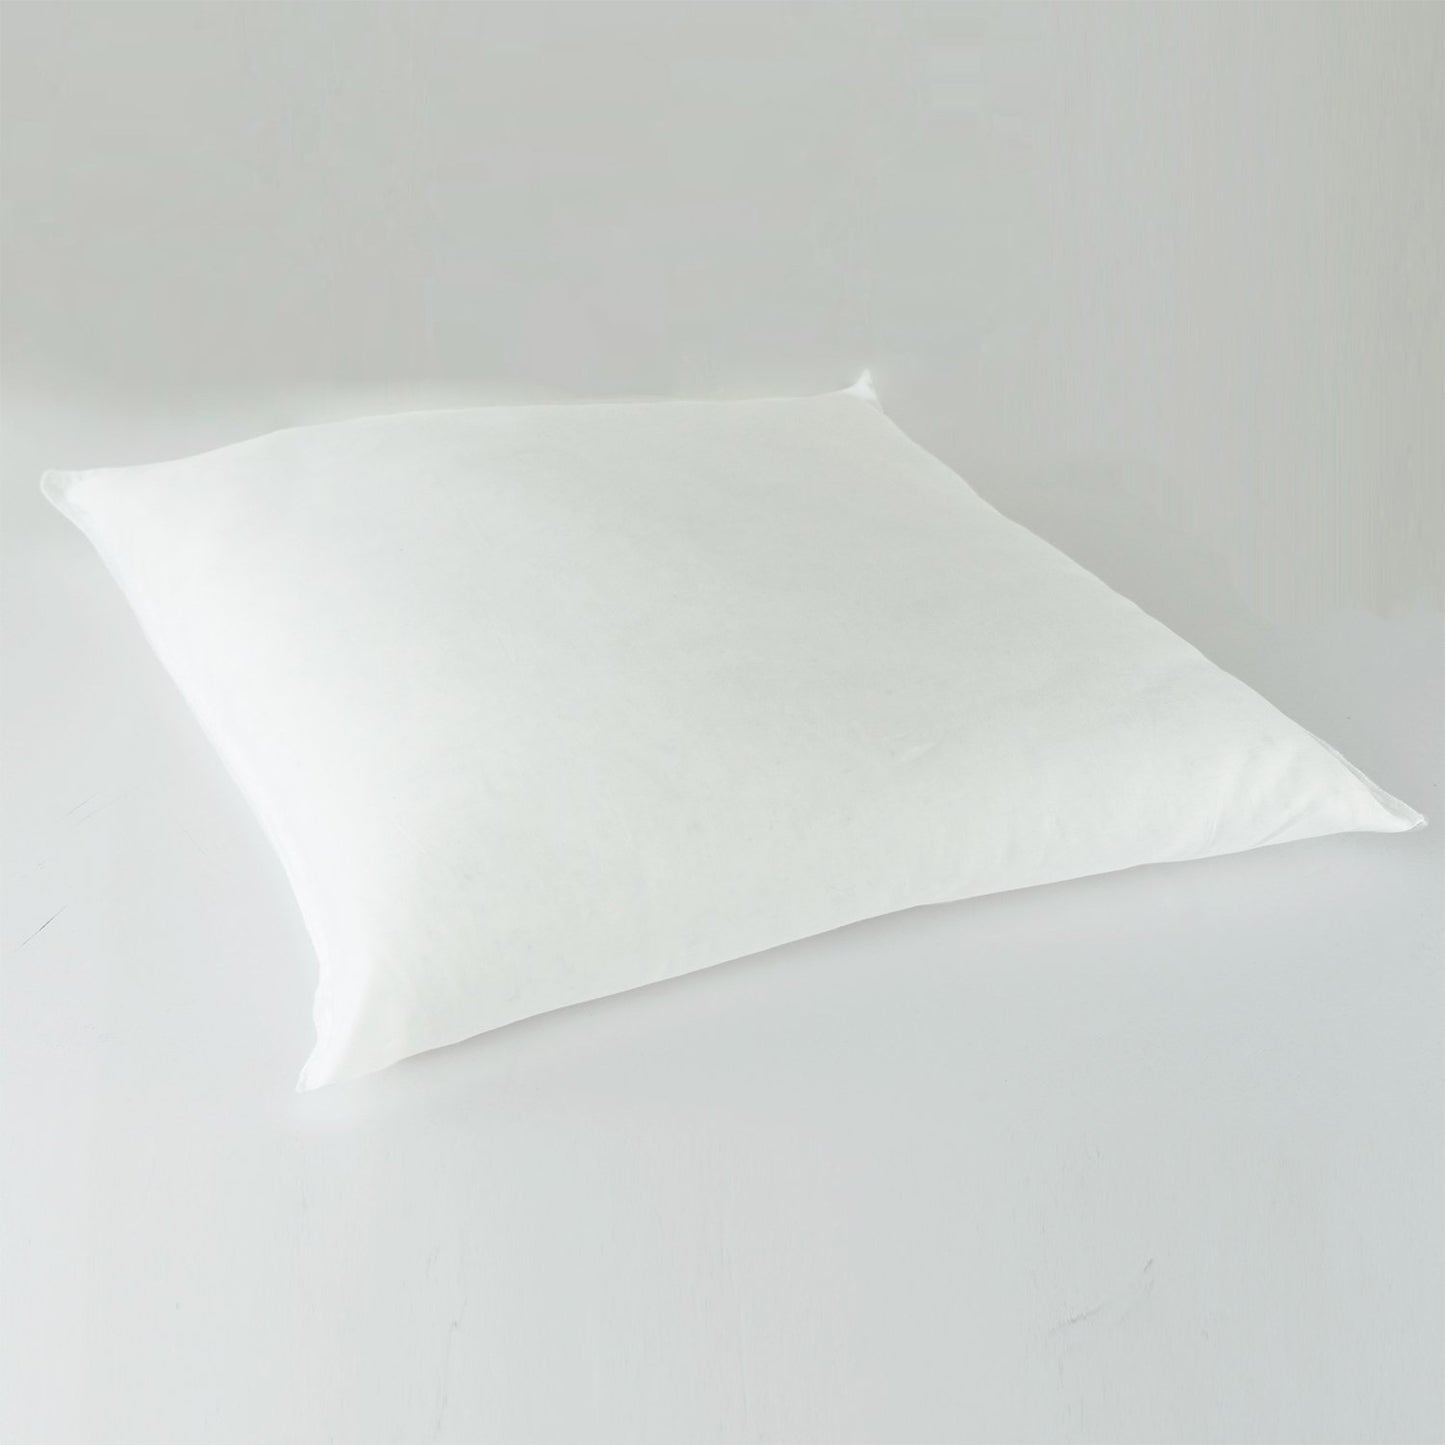 J-Life Nami Navy Zabuton Floor Pillow_Pillows & Shams_Zabuton Floor Pillows_100% Cotton_Reversible_Handmade